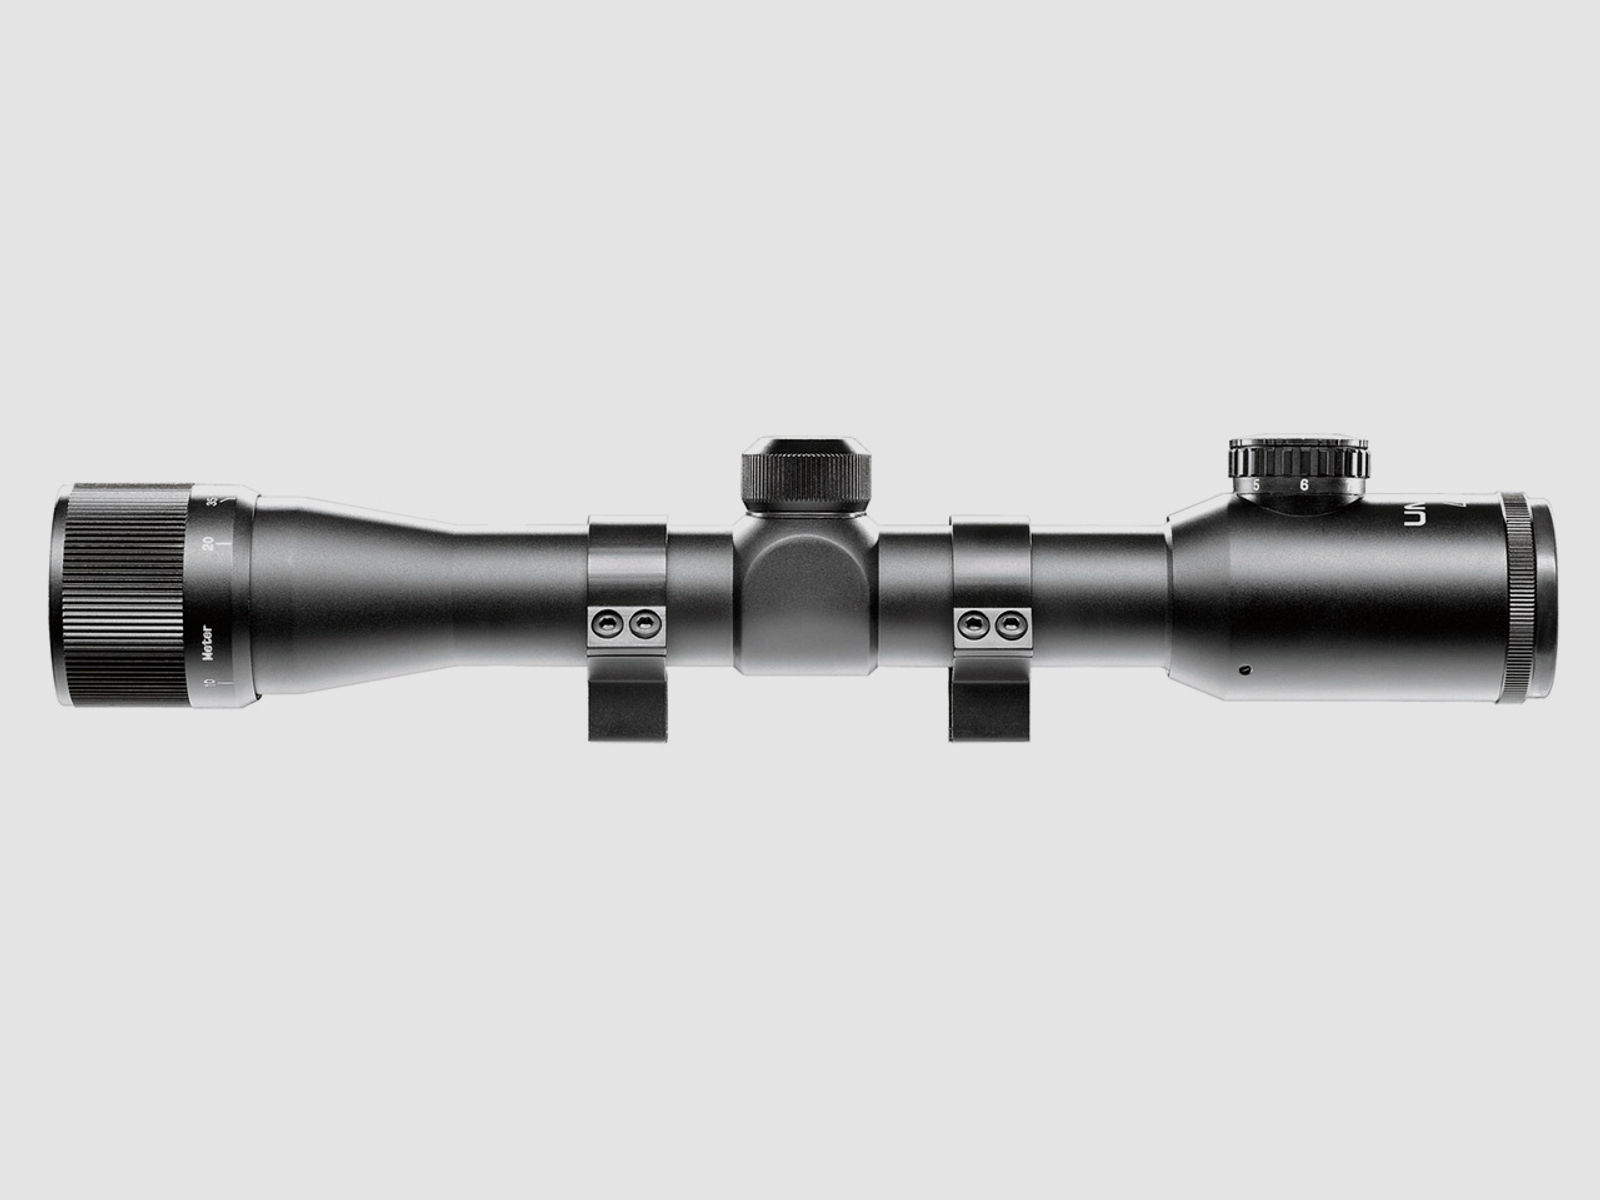 Zielfernrohr Umarex RS 4 x 32 CI TacDot Absehen beleuchtet mit High-Power-Ringmontagen fĂĽr 11 mm Prismenschiene